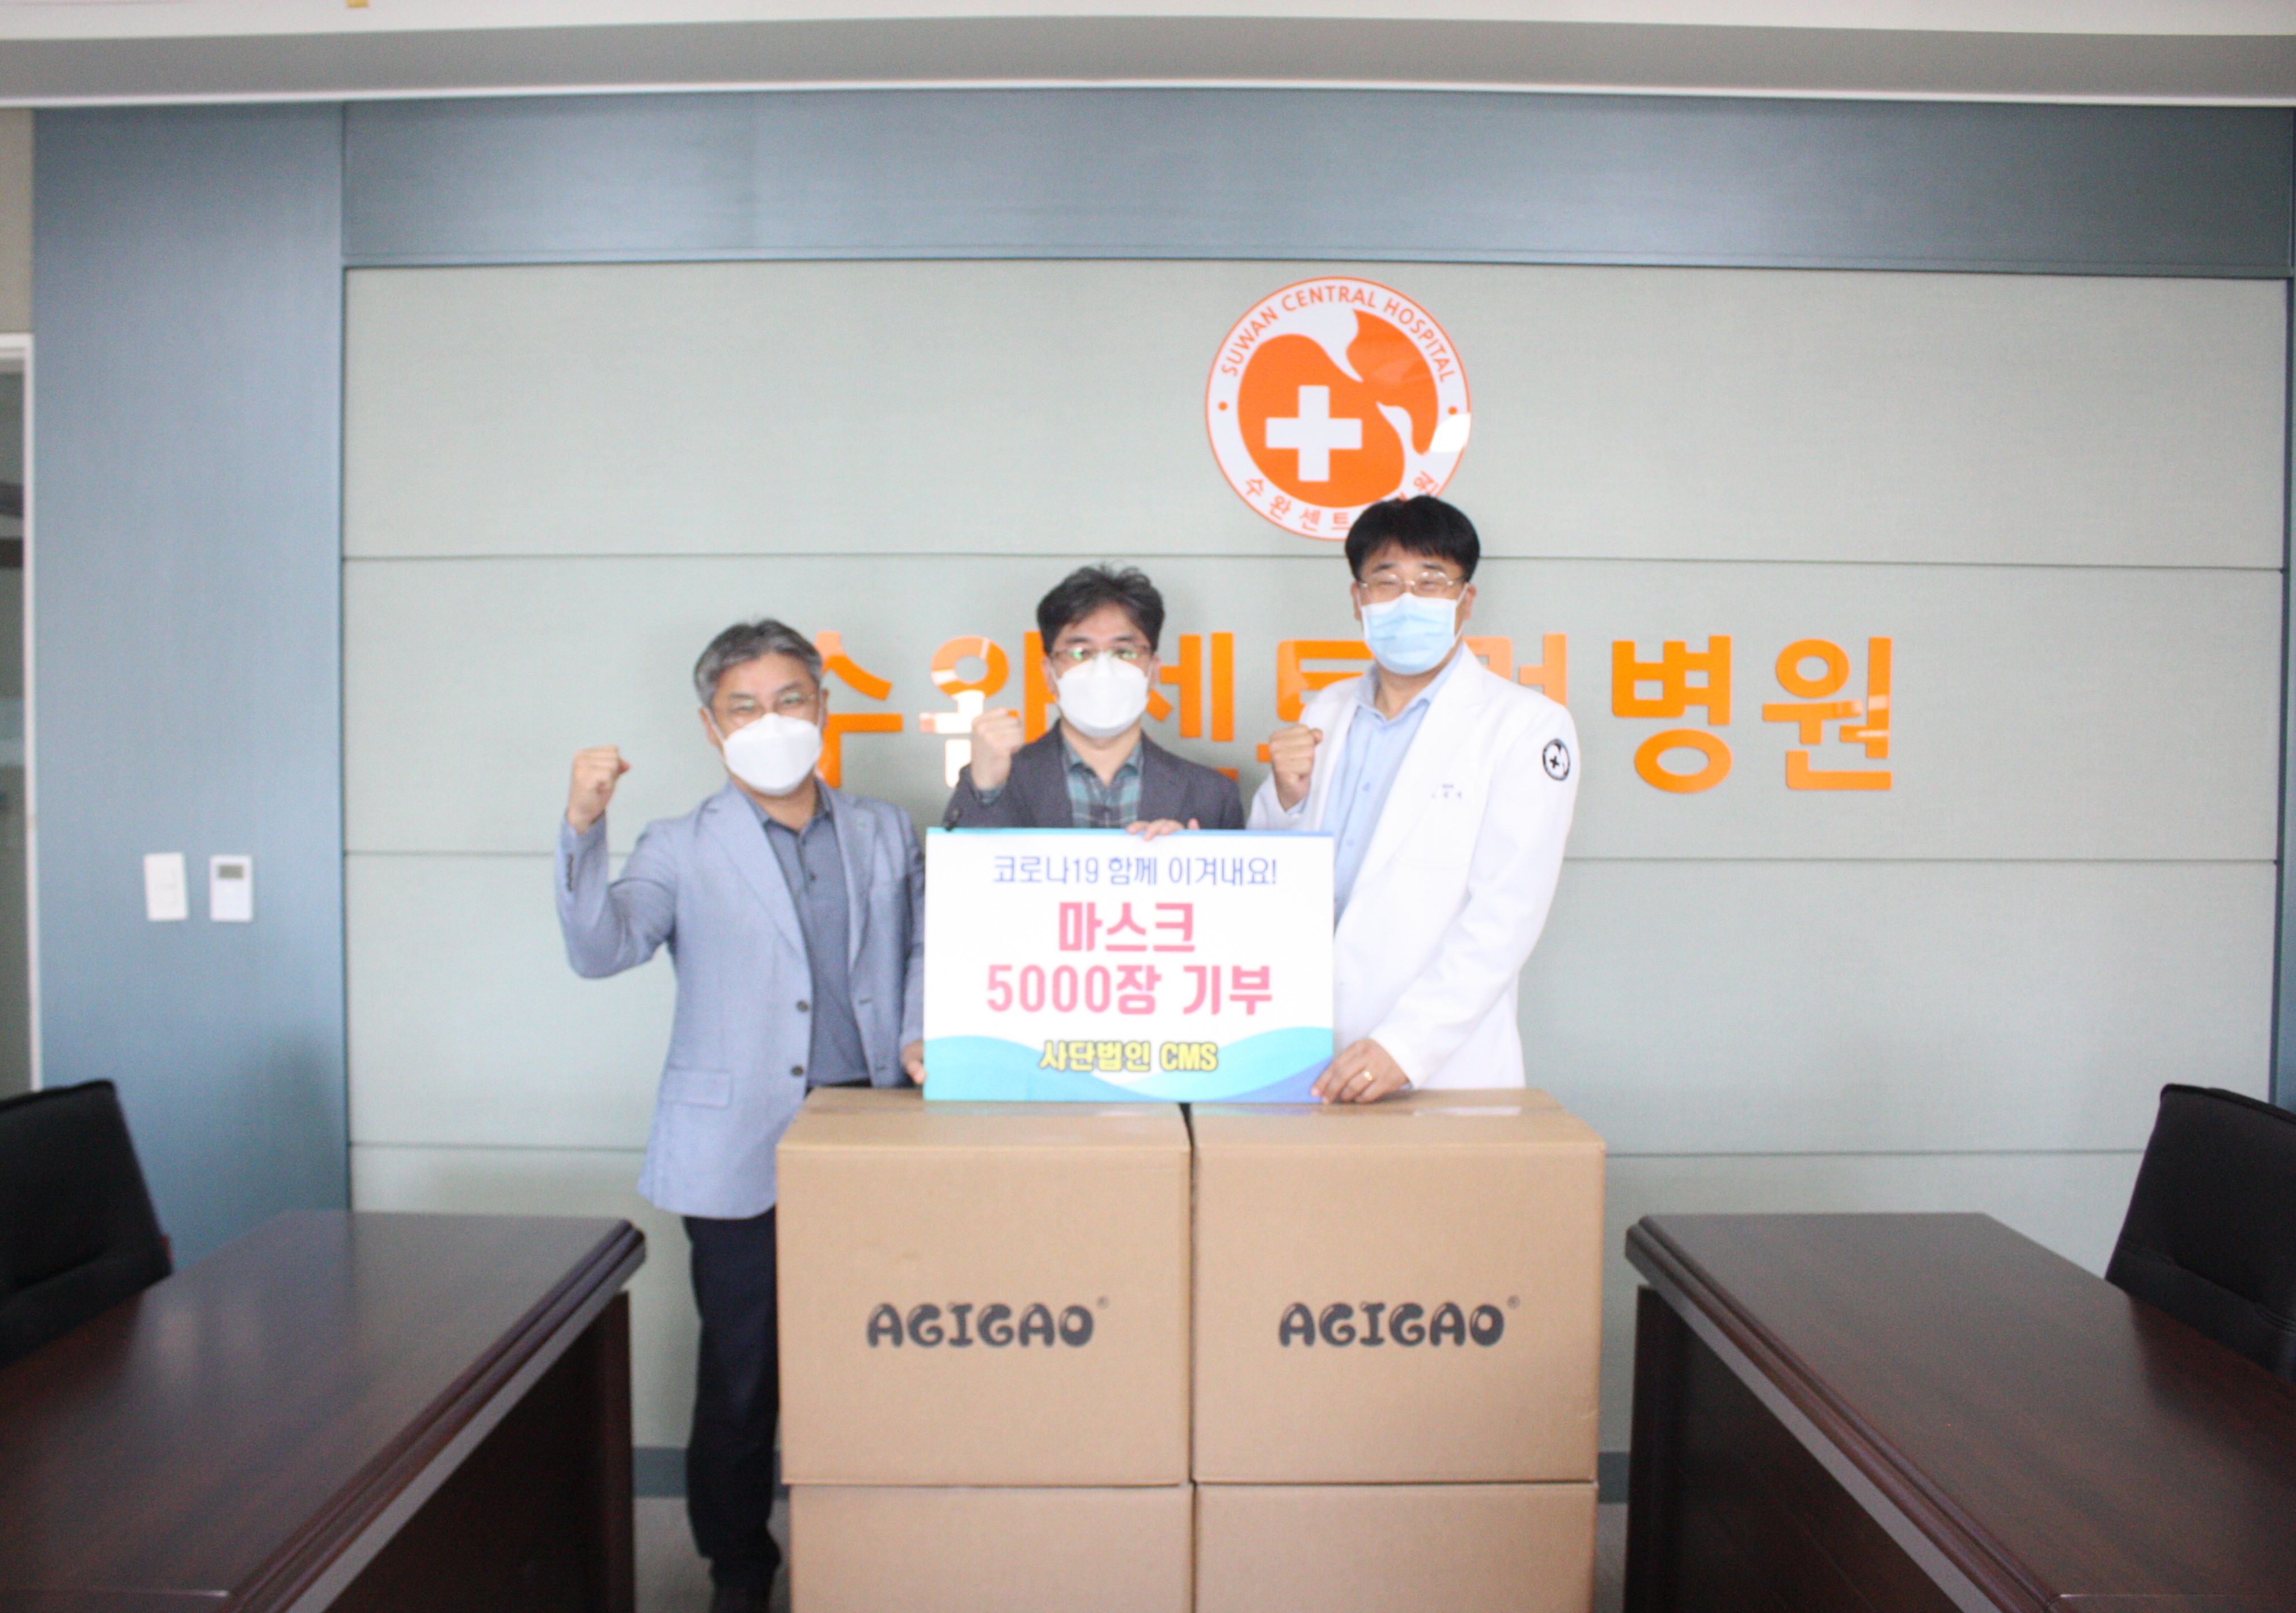 왼쪽부터 서정성 원장(아이안과), 김석원 교수(조선대학교병원 신경외과), 고길석 대표원장(수완센트럴병원)